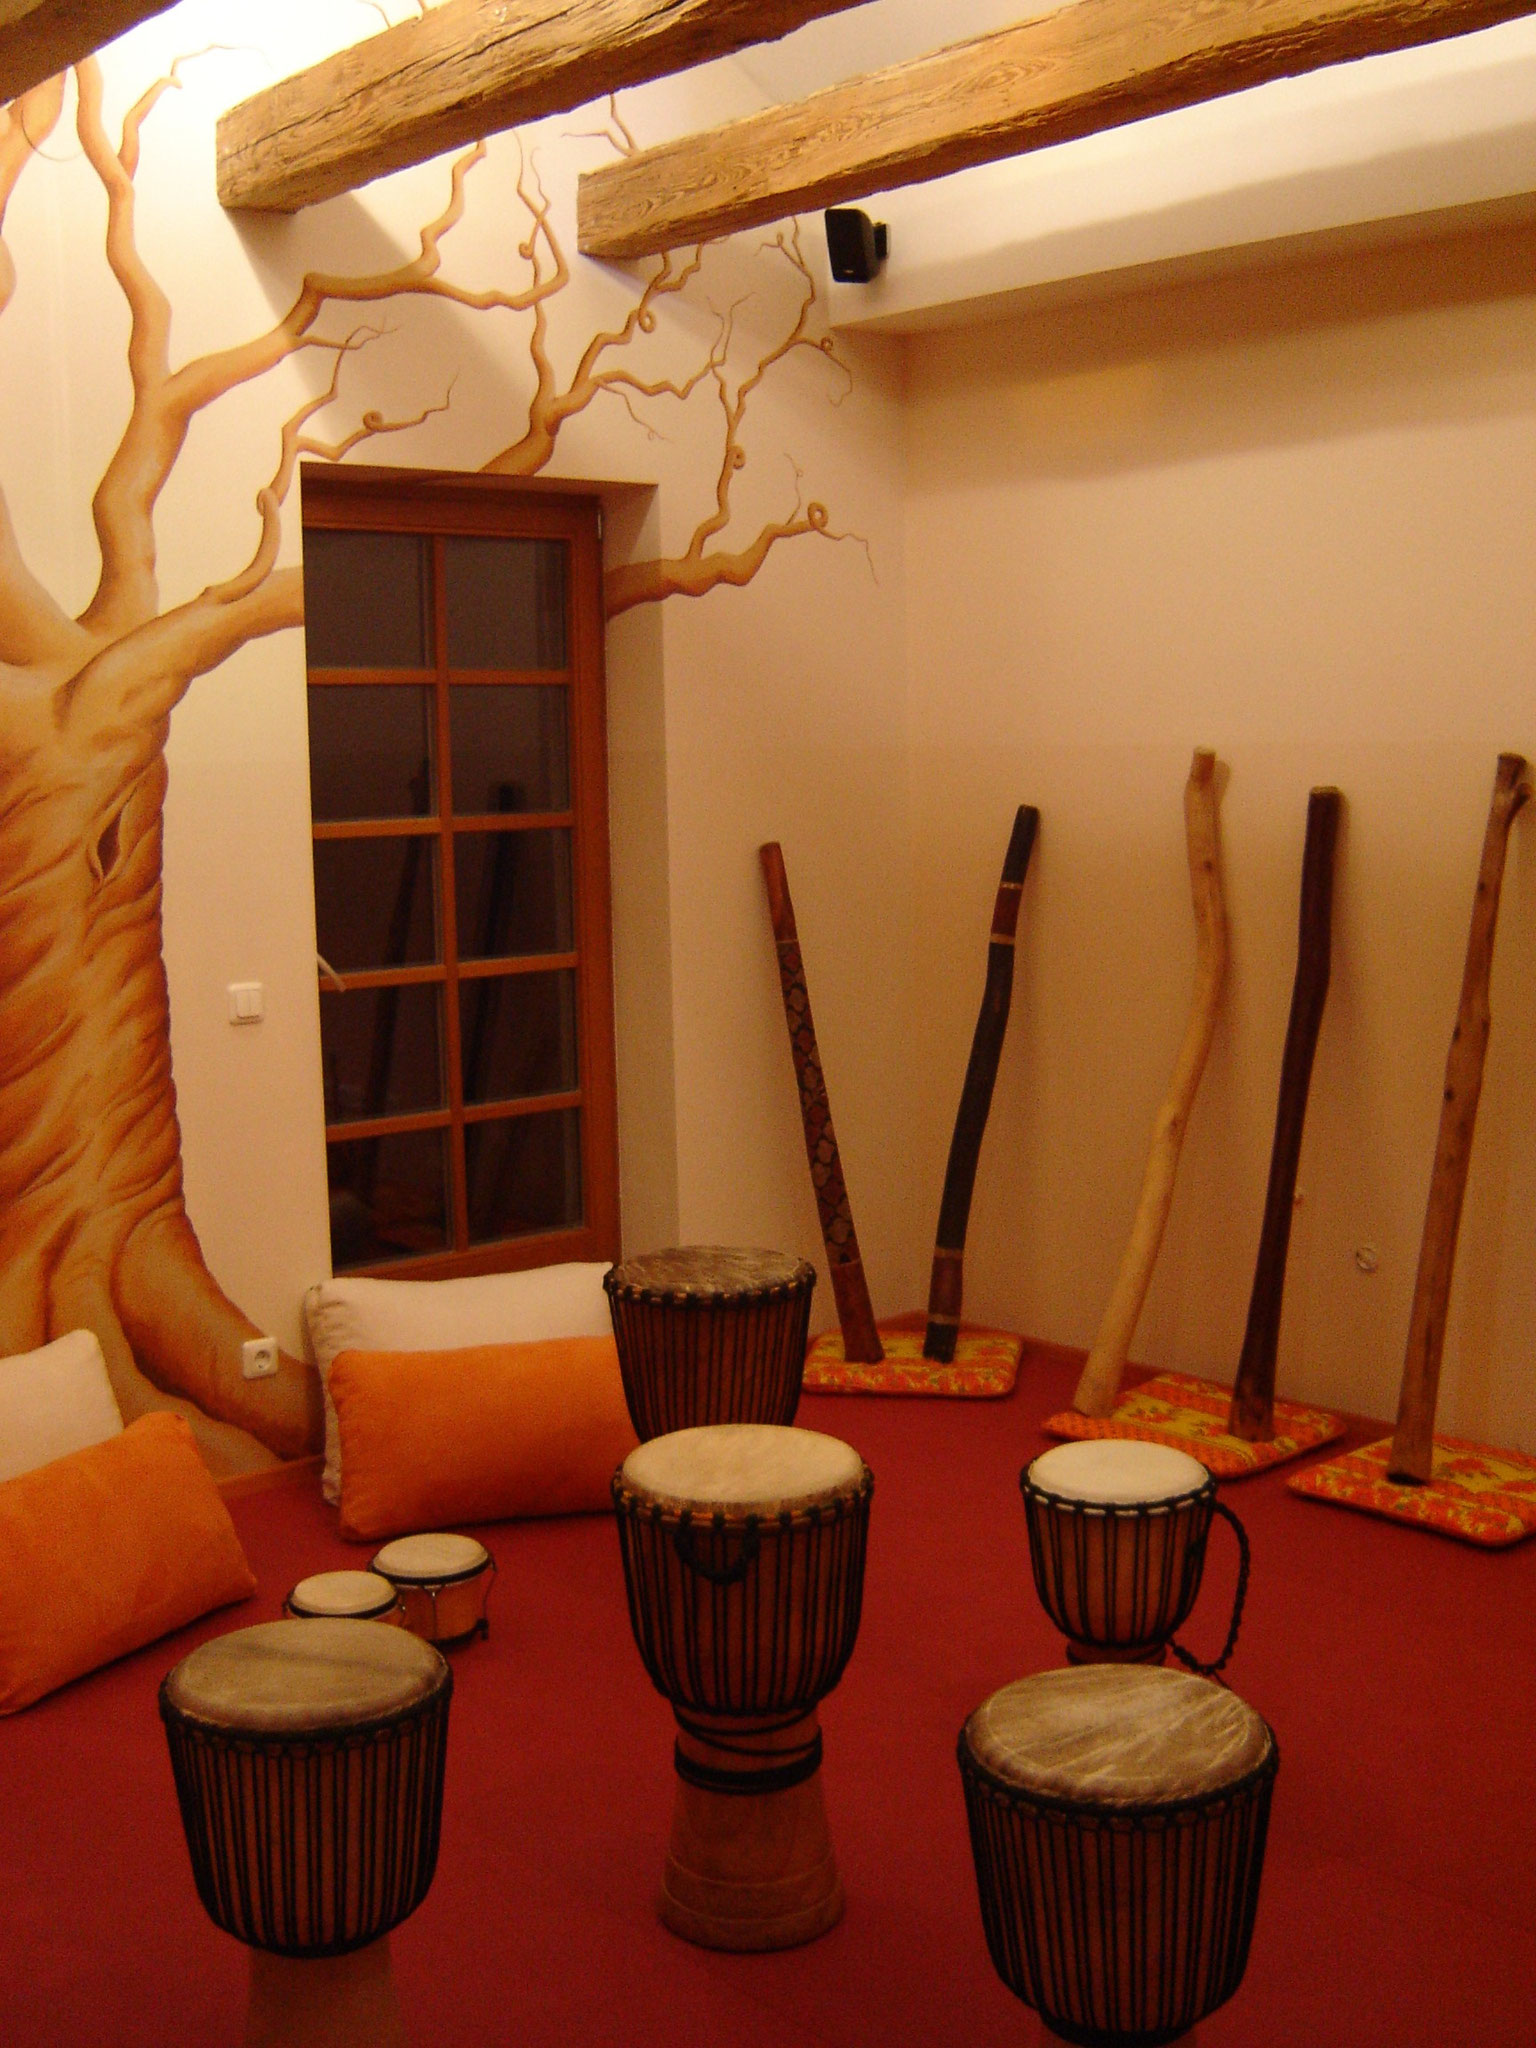 Trommeln und Didgeridoo spielen